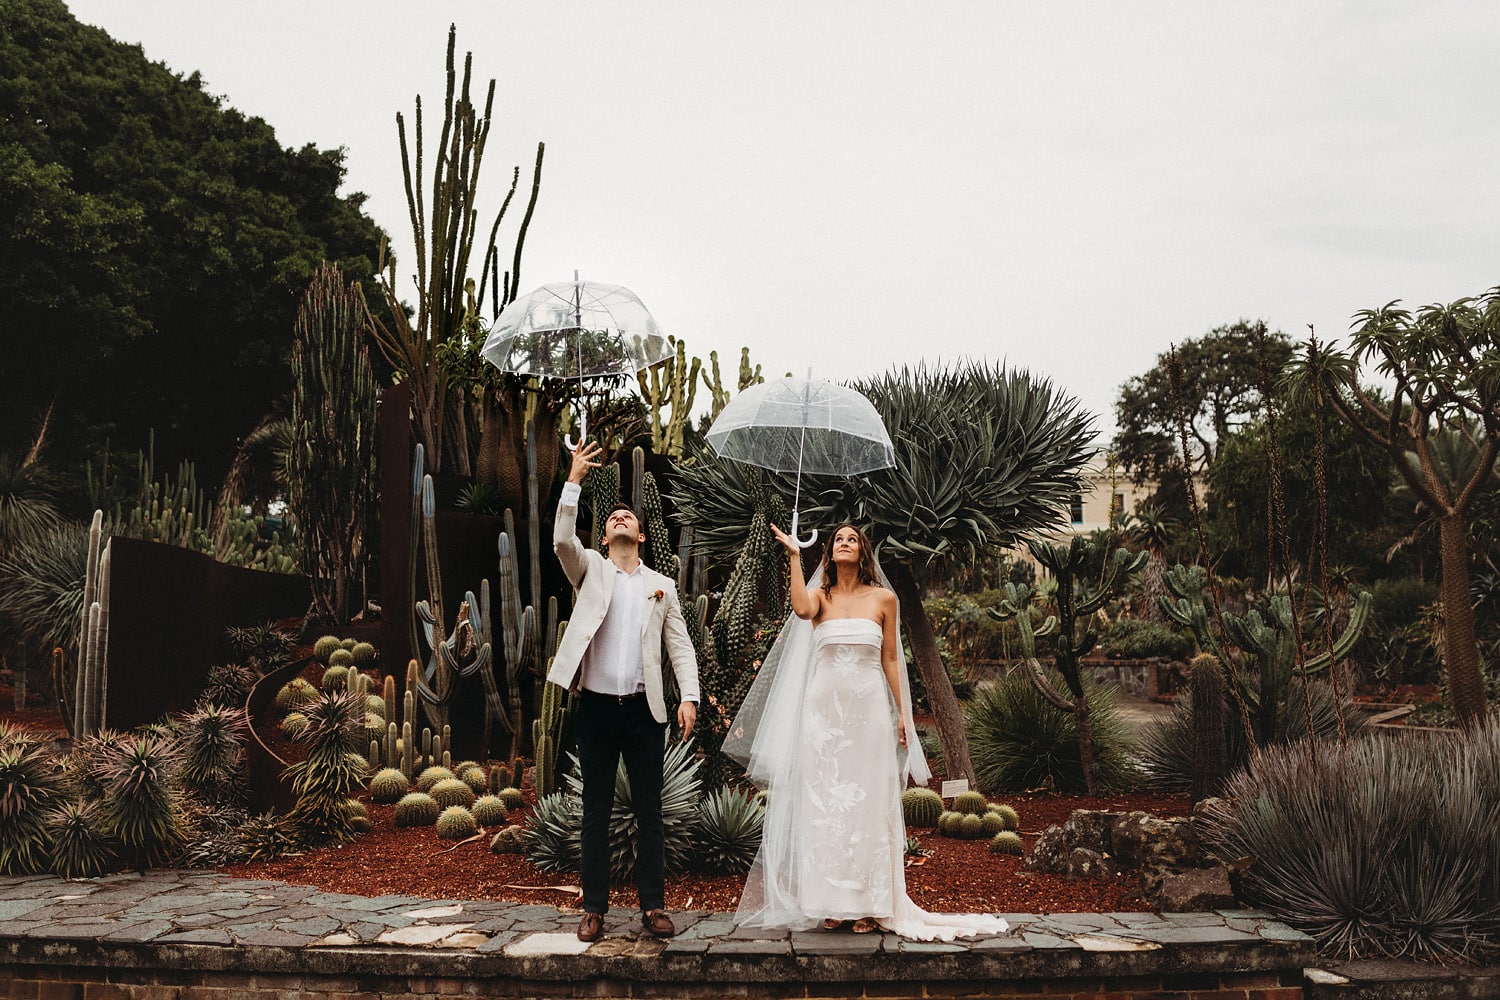 Sydney-wedding-photographer-royal-botanical-gardens-wet-weather